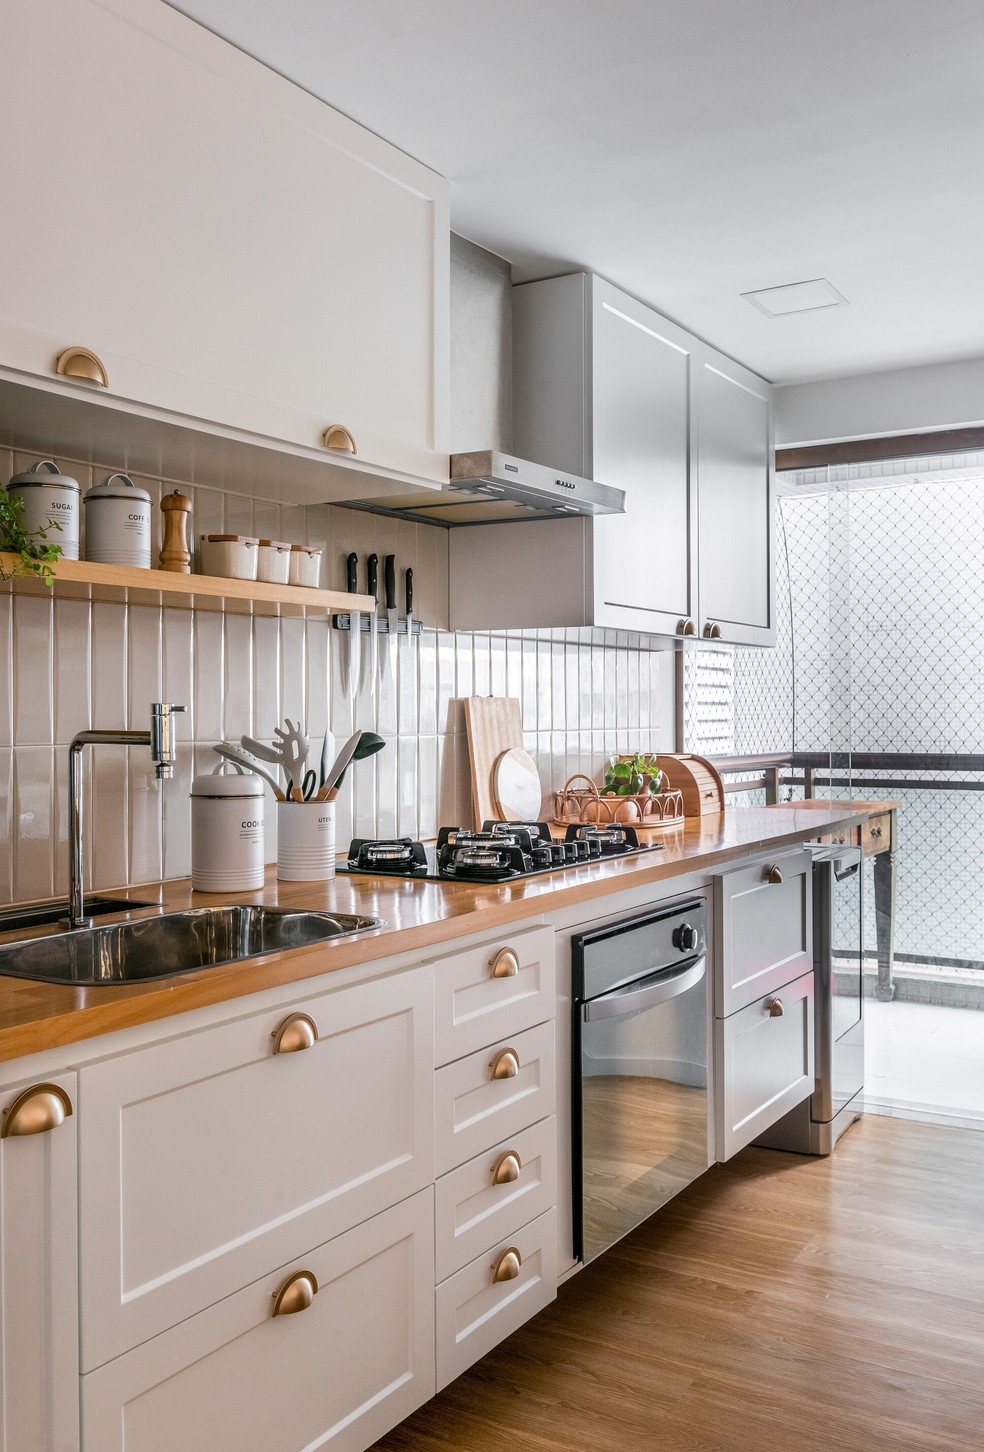 Os armários da cozinha seguem o estilo provençal — Foto: OPE!